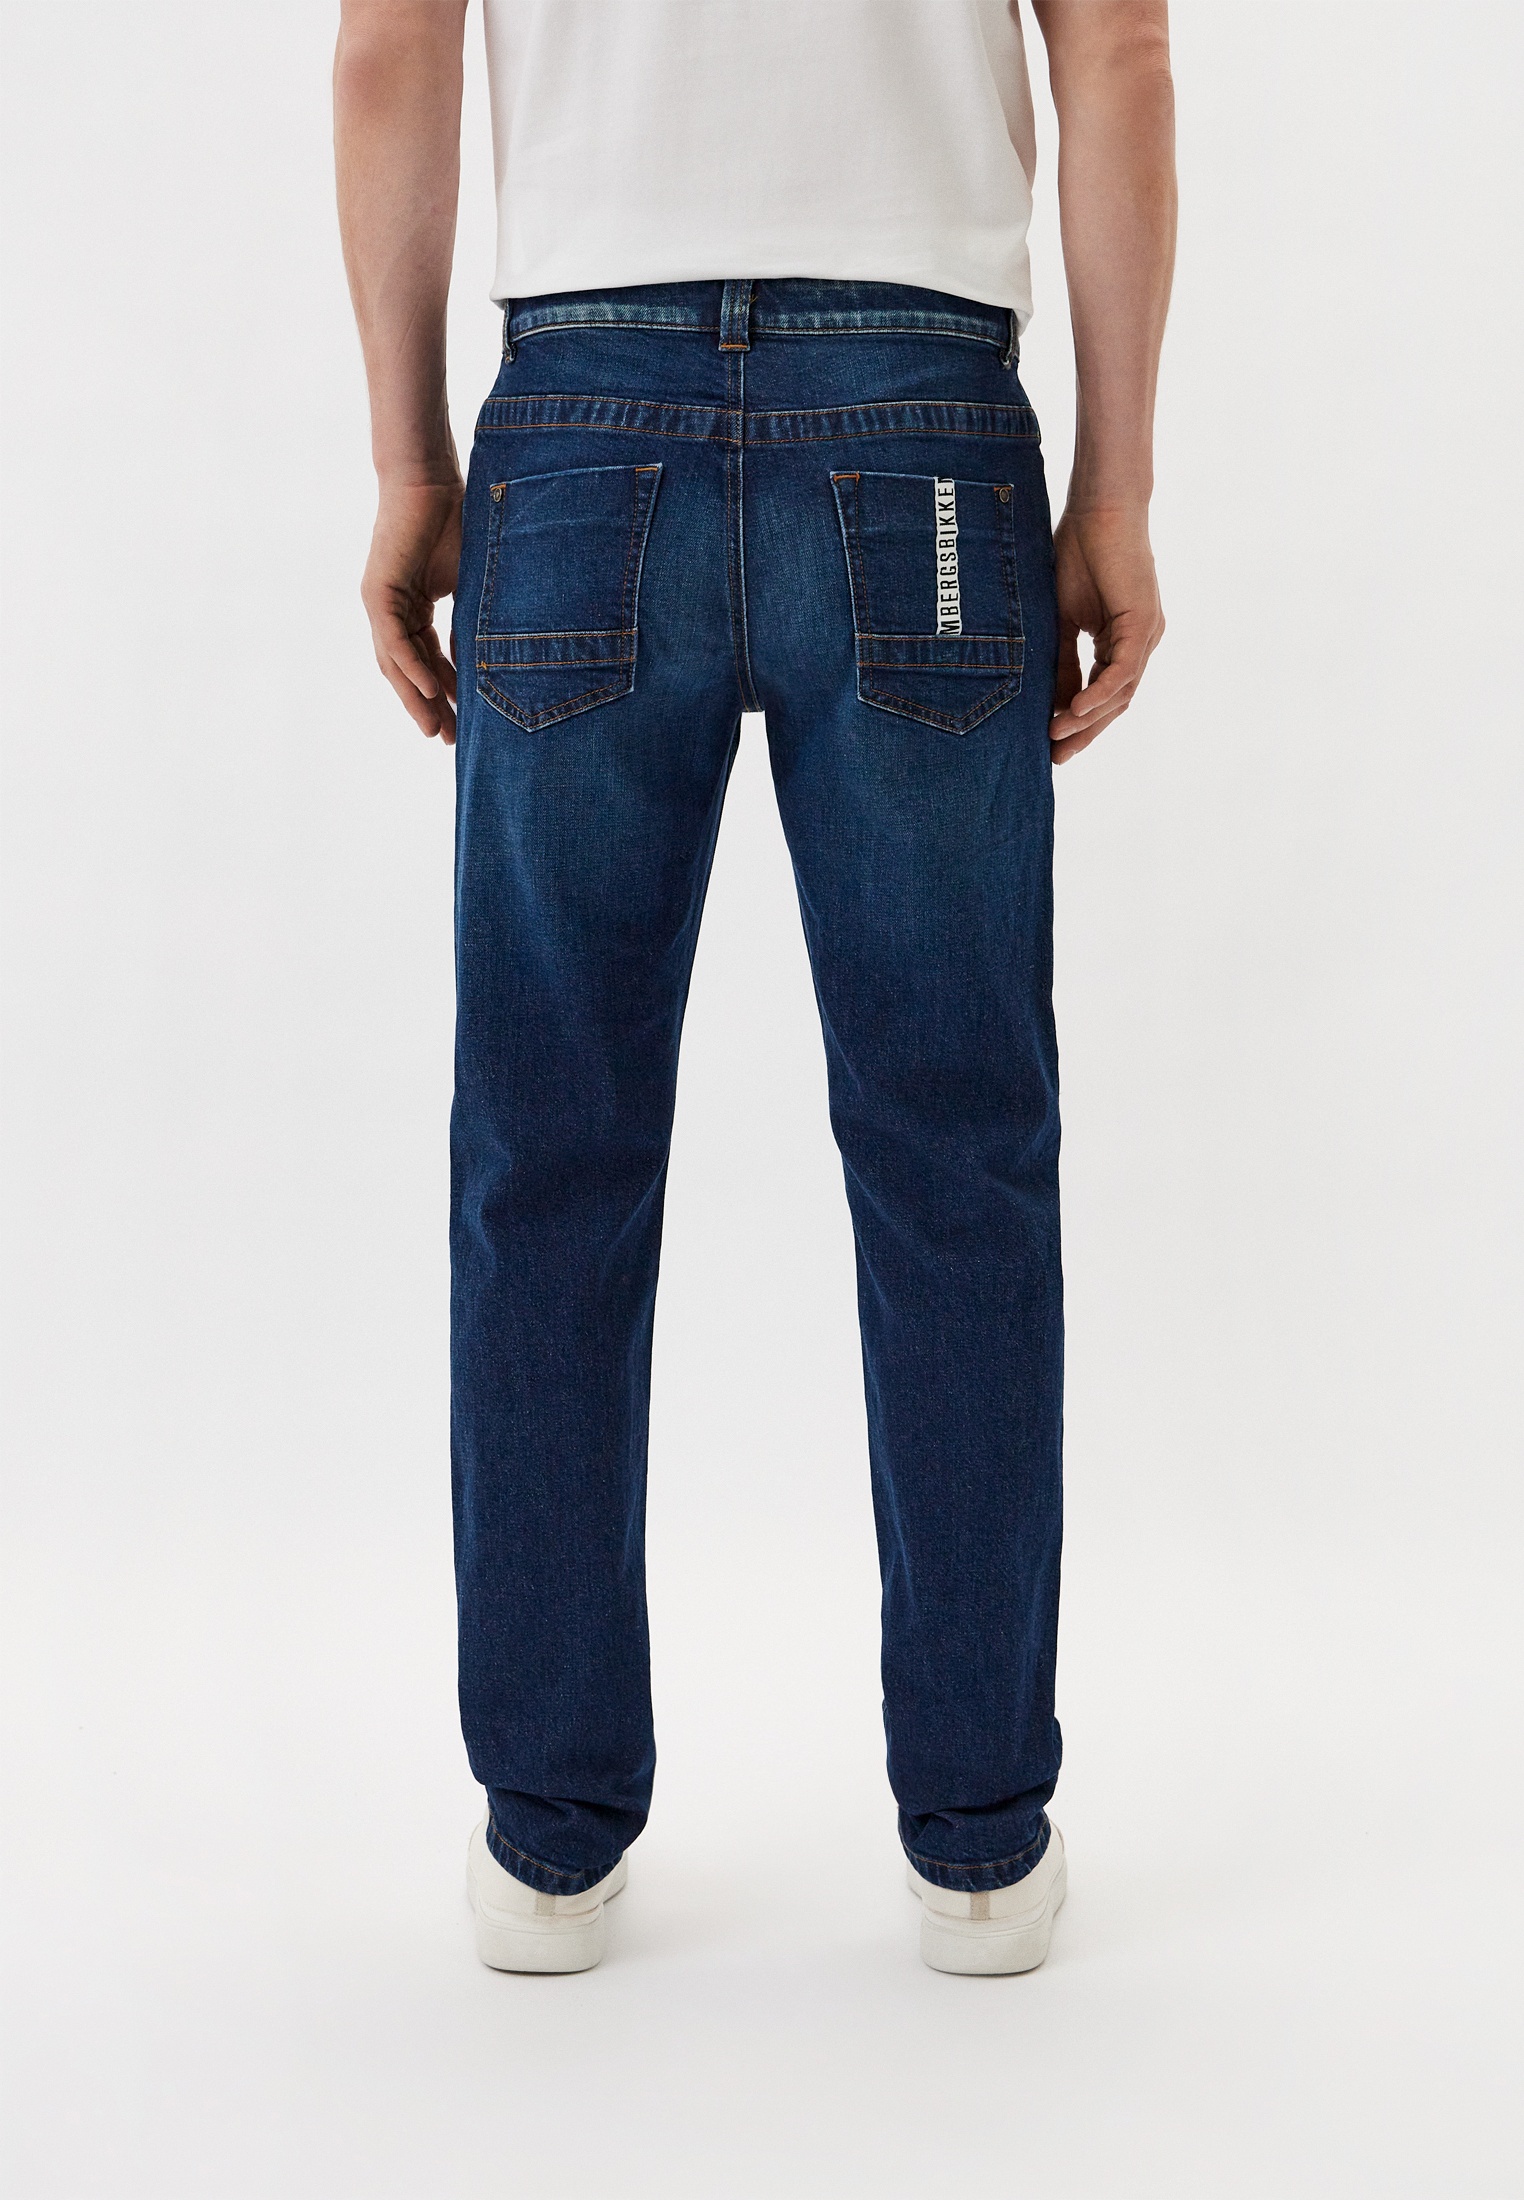 Мужские прямые джинсы Bikkembergs (Биккембергс) CQ10222S3976: изображение 3